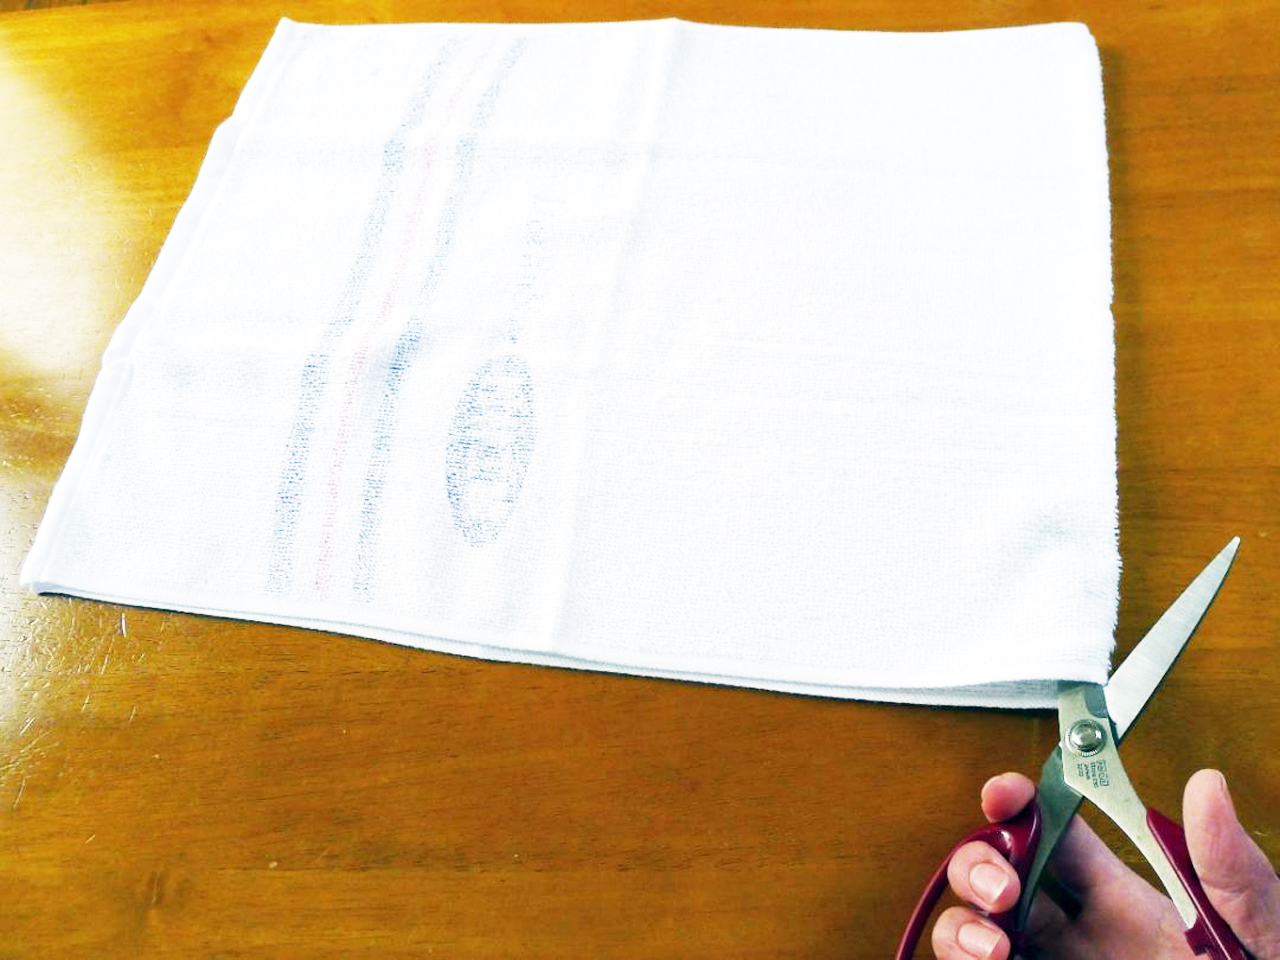 手縫いok 5分で完成 簡単な雑巾の作り方 アレンジで星やリボンにも ぎゅってweb